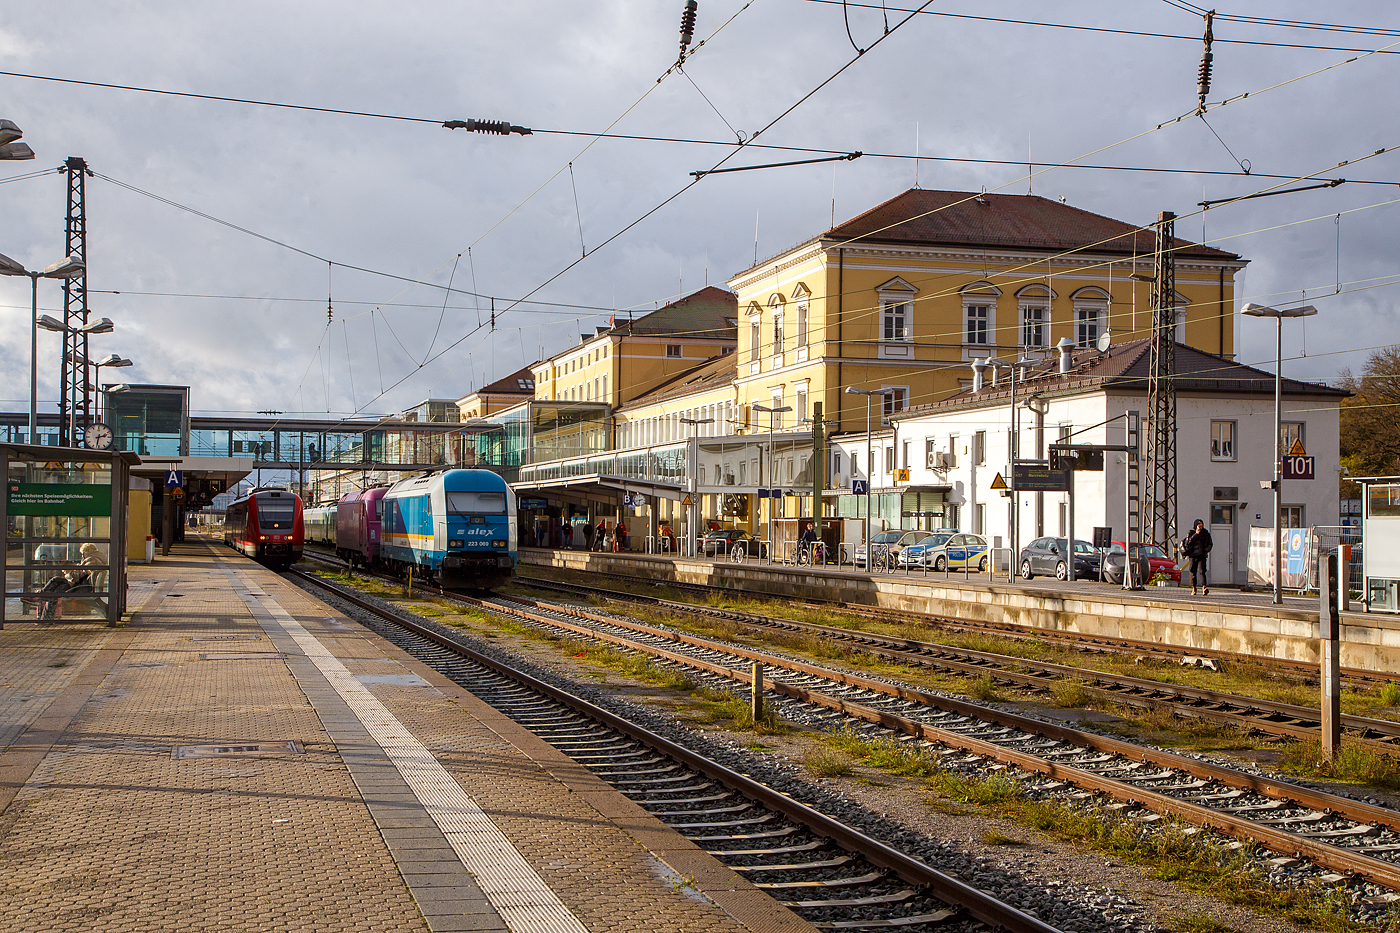 Regensburg Hauptbahnhof am 24.11.2022, links auf Gleis 4 Bombardier  RegioSwinger  (Dieseltriebwagen mit Neigetechnik) 612 481 / 612 981 als RE 40 nach Nürnberg Hbf zur Abfahrt bereit, auf Gleis 3 stehen die alex 223 069 und die alex 183 005 und warten auf die nächsten alex Züge nach Schwandorf  bzw. München. Bei den alex-Zügen (RE 25) findet im Hbf Regensburg ein Lokwechsel statt, von und nach München wird elektrisch mit einer 183er gefahren, Züge von bzw. nach Schwandorf und weiter bis/ab Plzeň (Pilsen) werden mit Dieselloks der BR 223 gefahren.

Der Regensburg Hauptbahnhof, ist der größte Bahnhof der Stadt Regensburg. Das heutige Empfangsgebäude wurde 1892 fertig gestellt und ersetzte einen etwas südlicher gelegenen Vorgängerbau, der 1859 im Zuge der ersten Bahnanbindung der Stadt errichtet worden war.

Der Regensburger Hauptbahnhof befindet sich am südlichen Rand der Altstadt. Seit dem Umbau 2004 ist der Ausgang nicht nur nach Norden zur Altstadt, sondern auch nach Süden zur Passage des Einkaufszentrums Regensburg Arcaden. Fußläufig sind auch die südlichen Stadtteile erreichbar. 

Der Ausgang nach Norden führt zur Altstadt und zum Busbahnhof und ist nicht weit entfernt vom Schlosspark des Schlosses Thurn und Taxis, der aber nicht frei zugänglich ist. 

In Regensburg treffen sich die Strecken:
    München–Regensburg (KBS 930)
    Nürnberg–Regensburg (KBS 880)
    Regensburg–Weiden (KBS 855)
    Regensburg–Ingolstadt (KBS 993)
